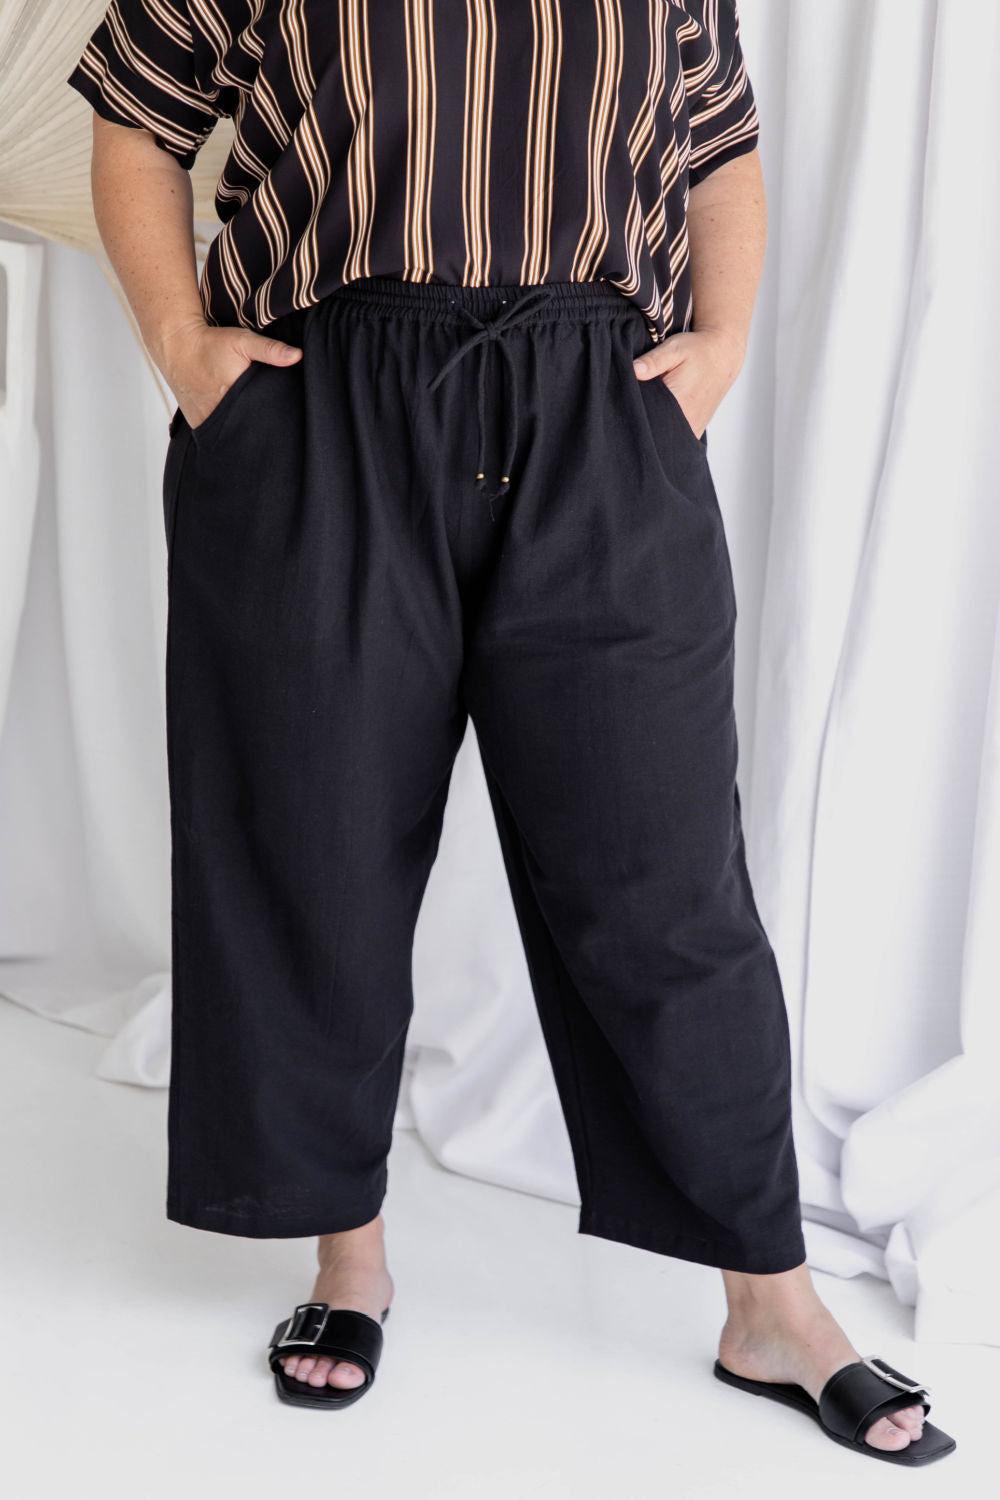 ladies-long-cotton-pants-black-plus-size